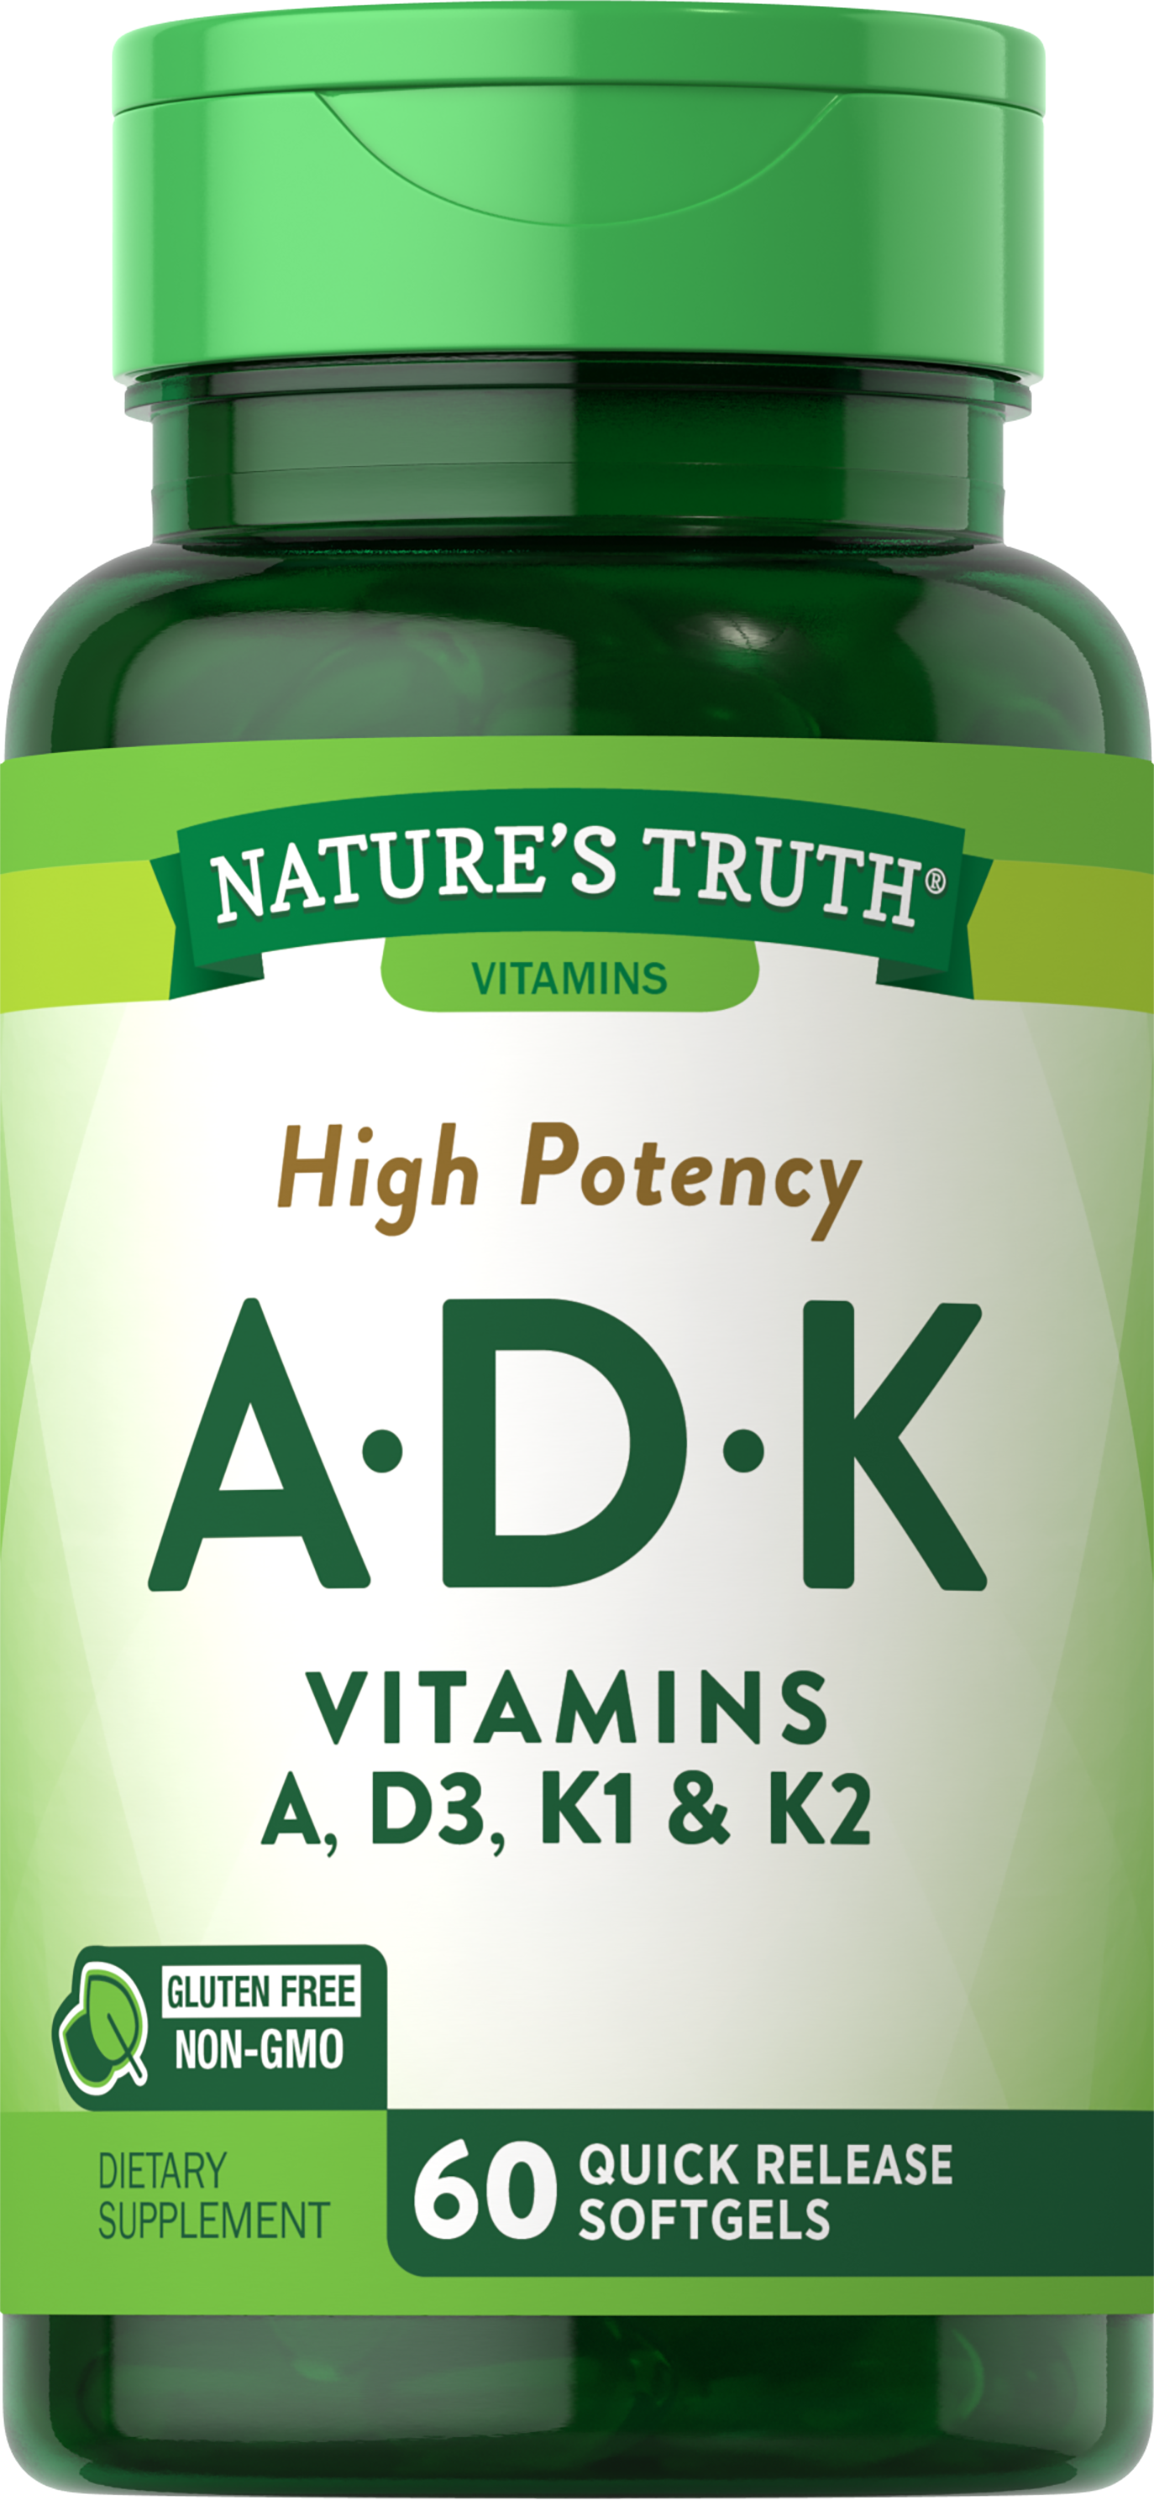 Vitamins A-D-K